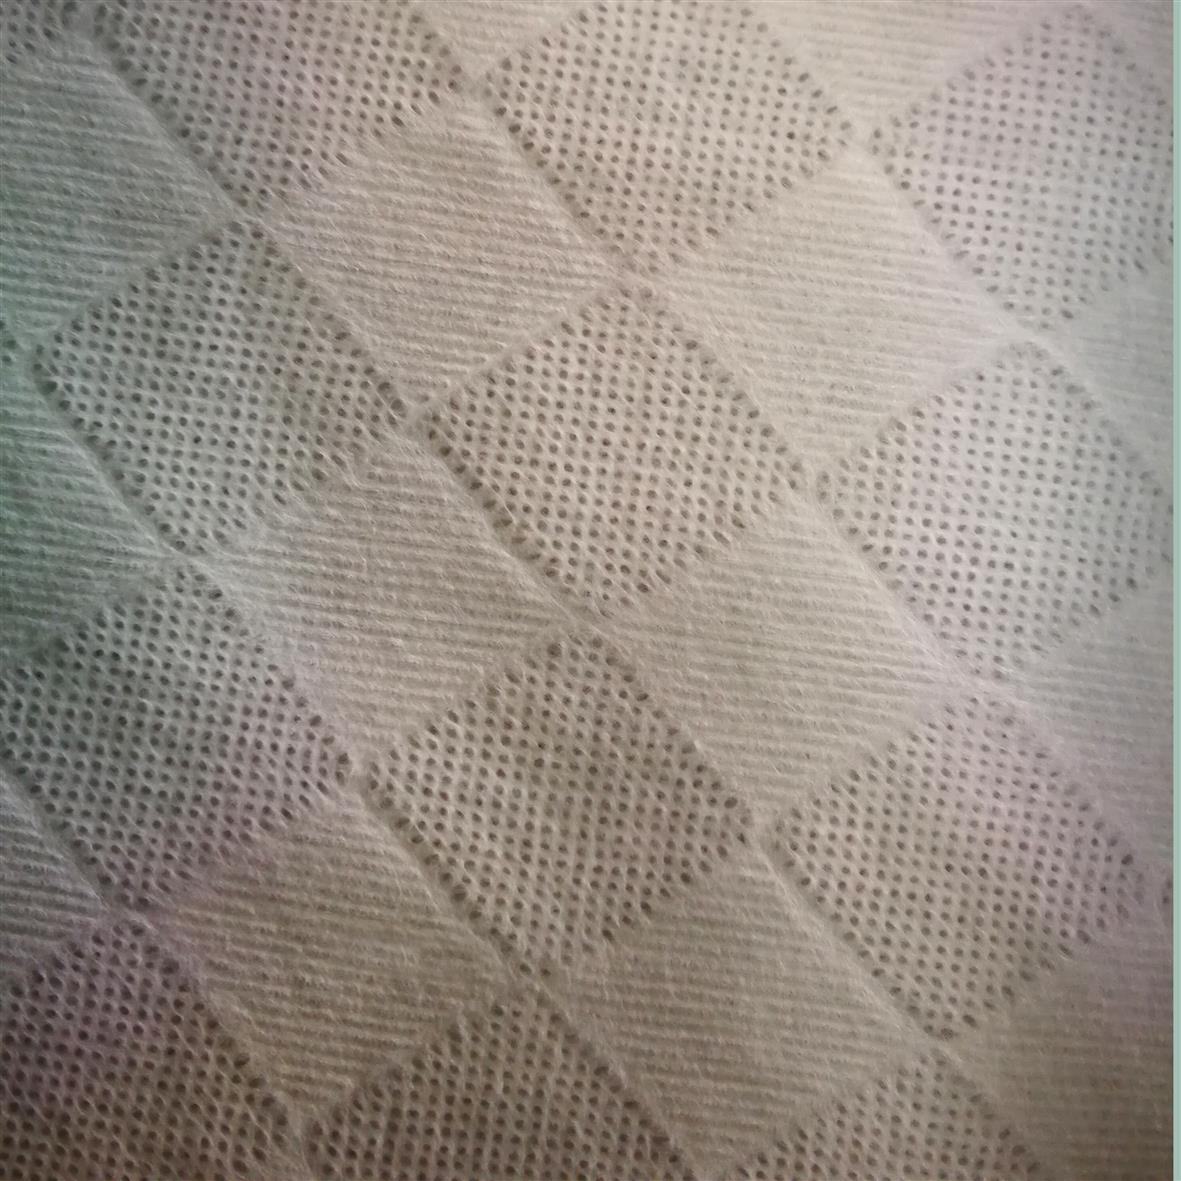 植物纤维竹纤维水刺无纺布制造厂 竹纤维珍珠纹湿巾布